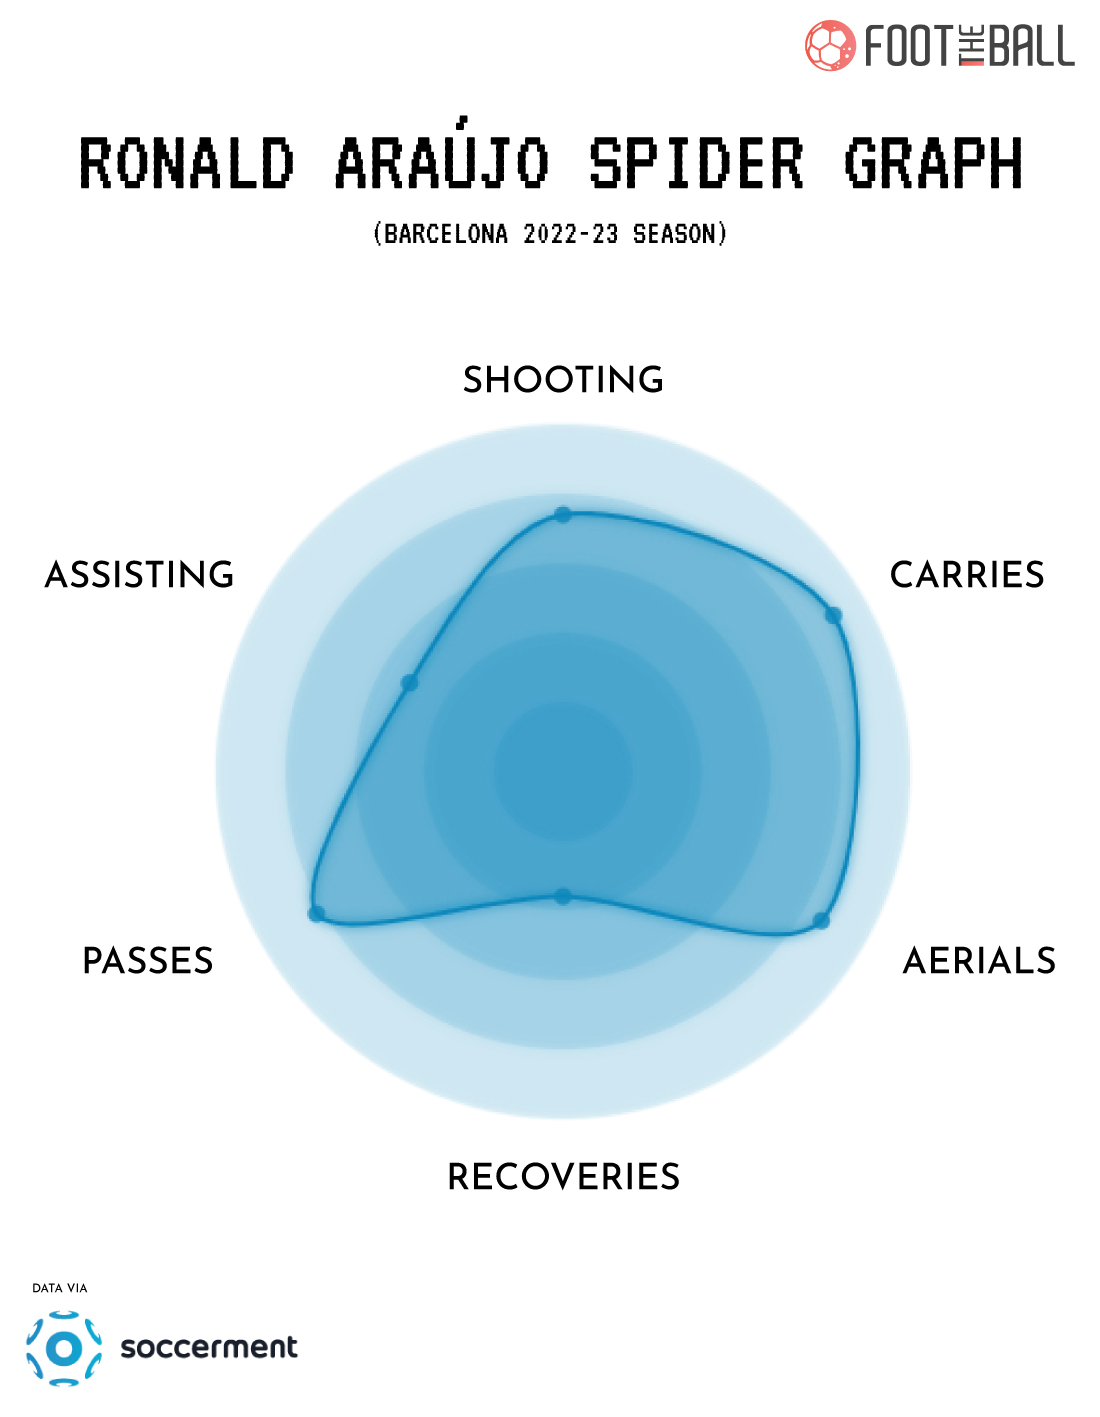 Ronald Araujo Spider Graph